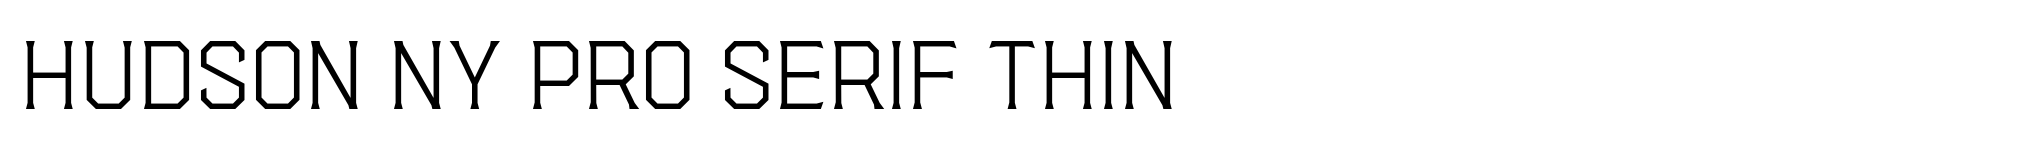 Hudson NY Pro Serif Thin image